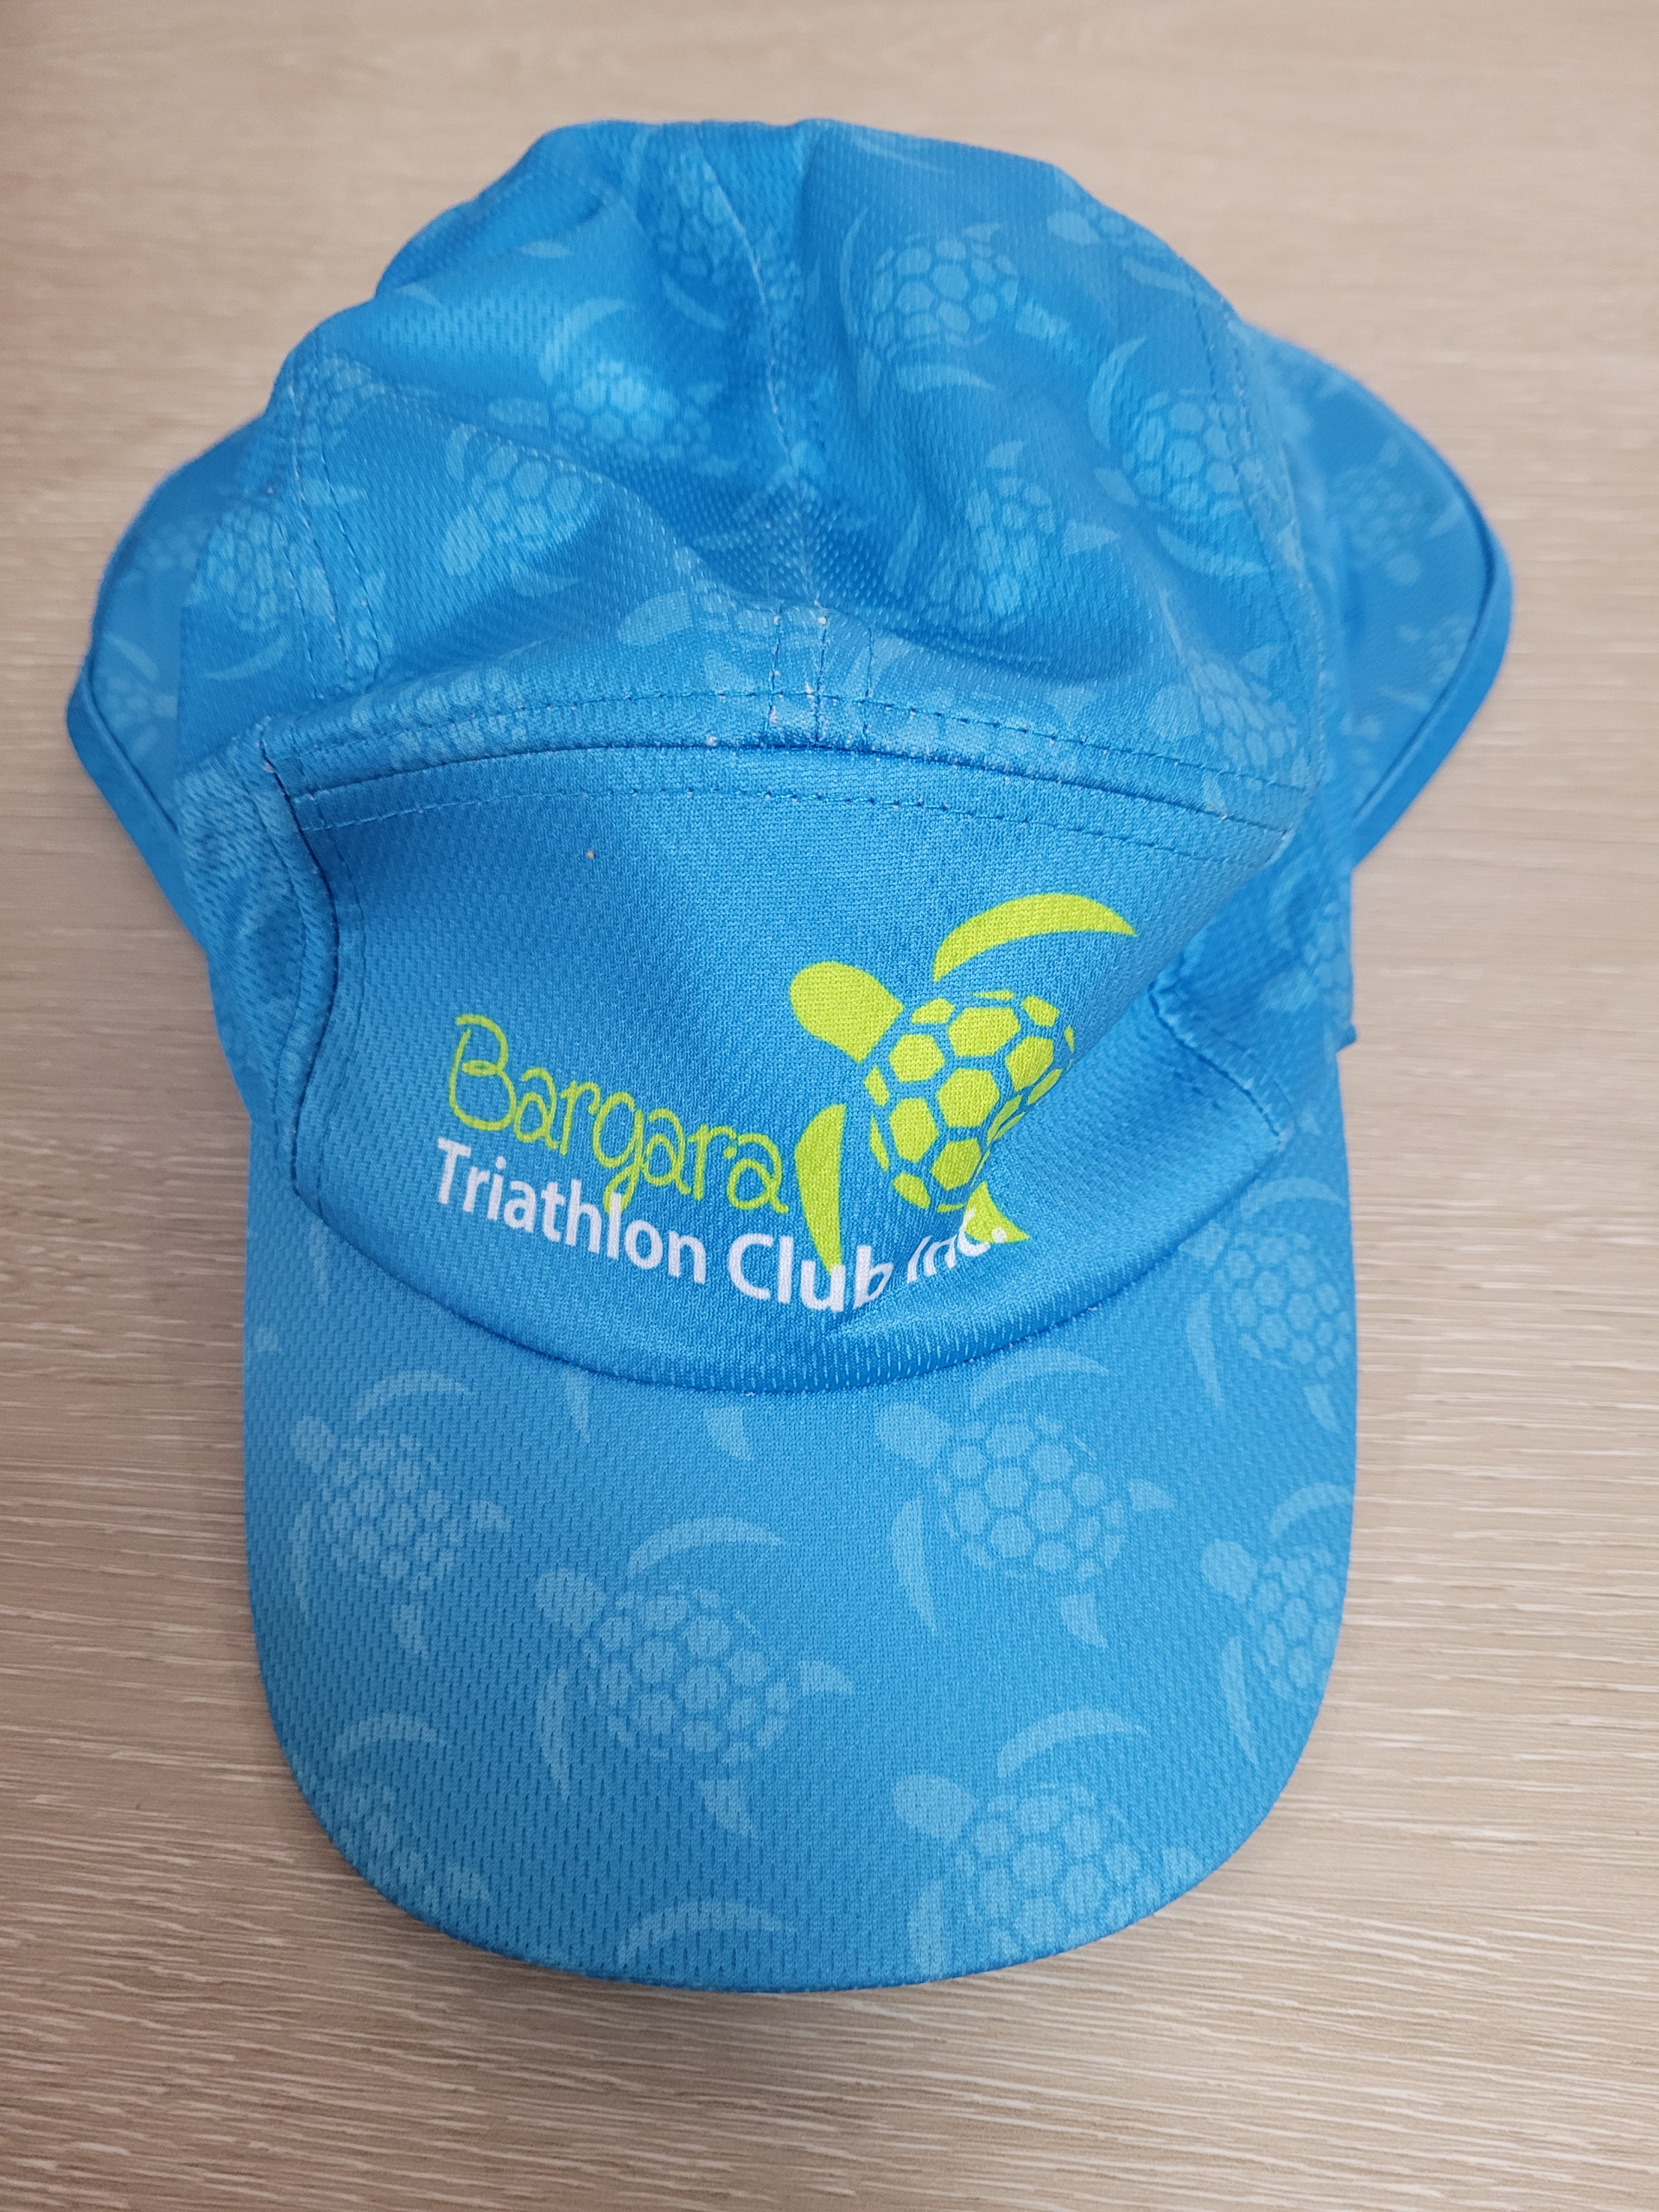 Bargara Triathlon Club – Bargara Triathlon Club